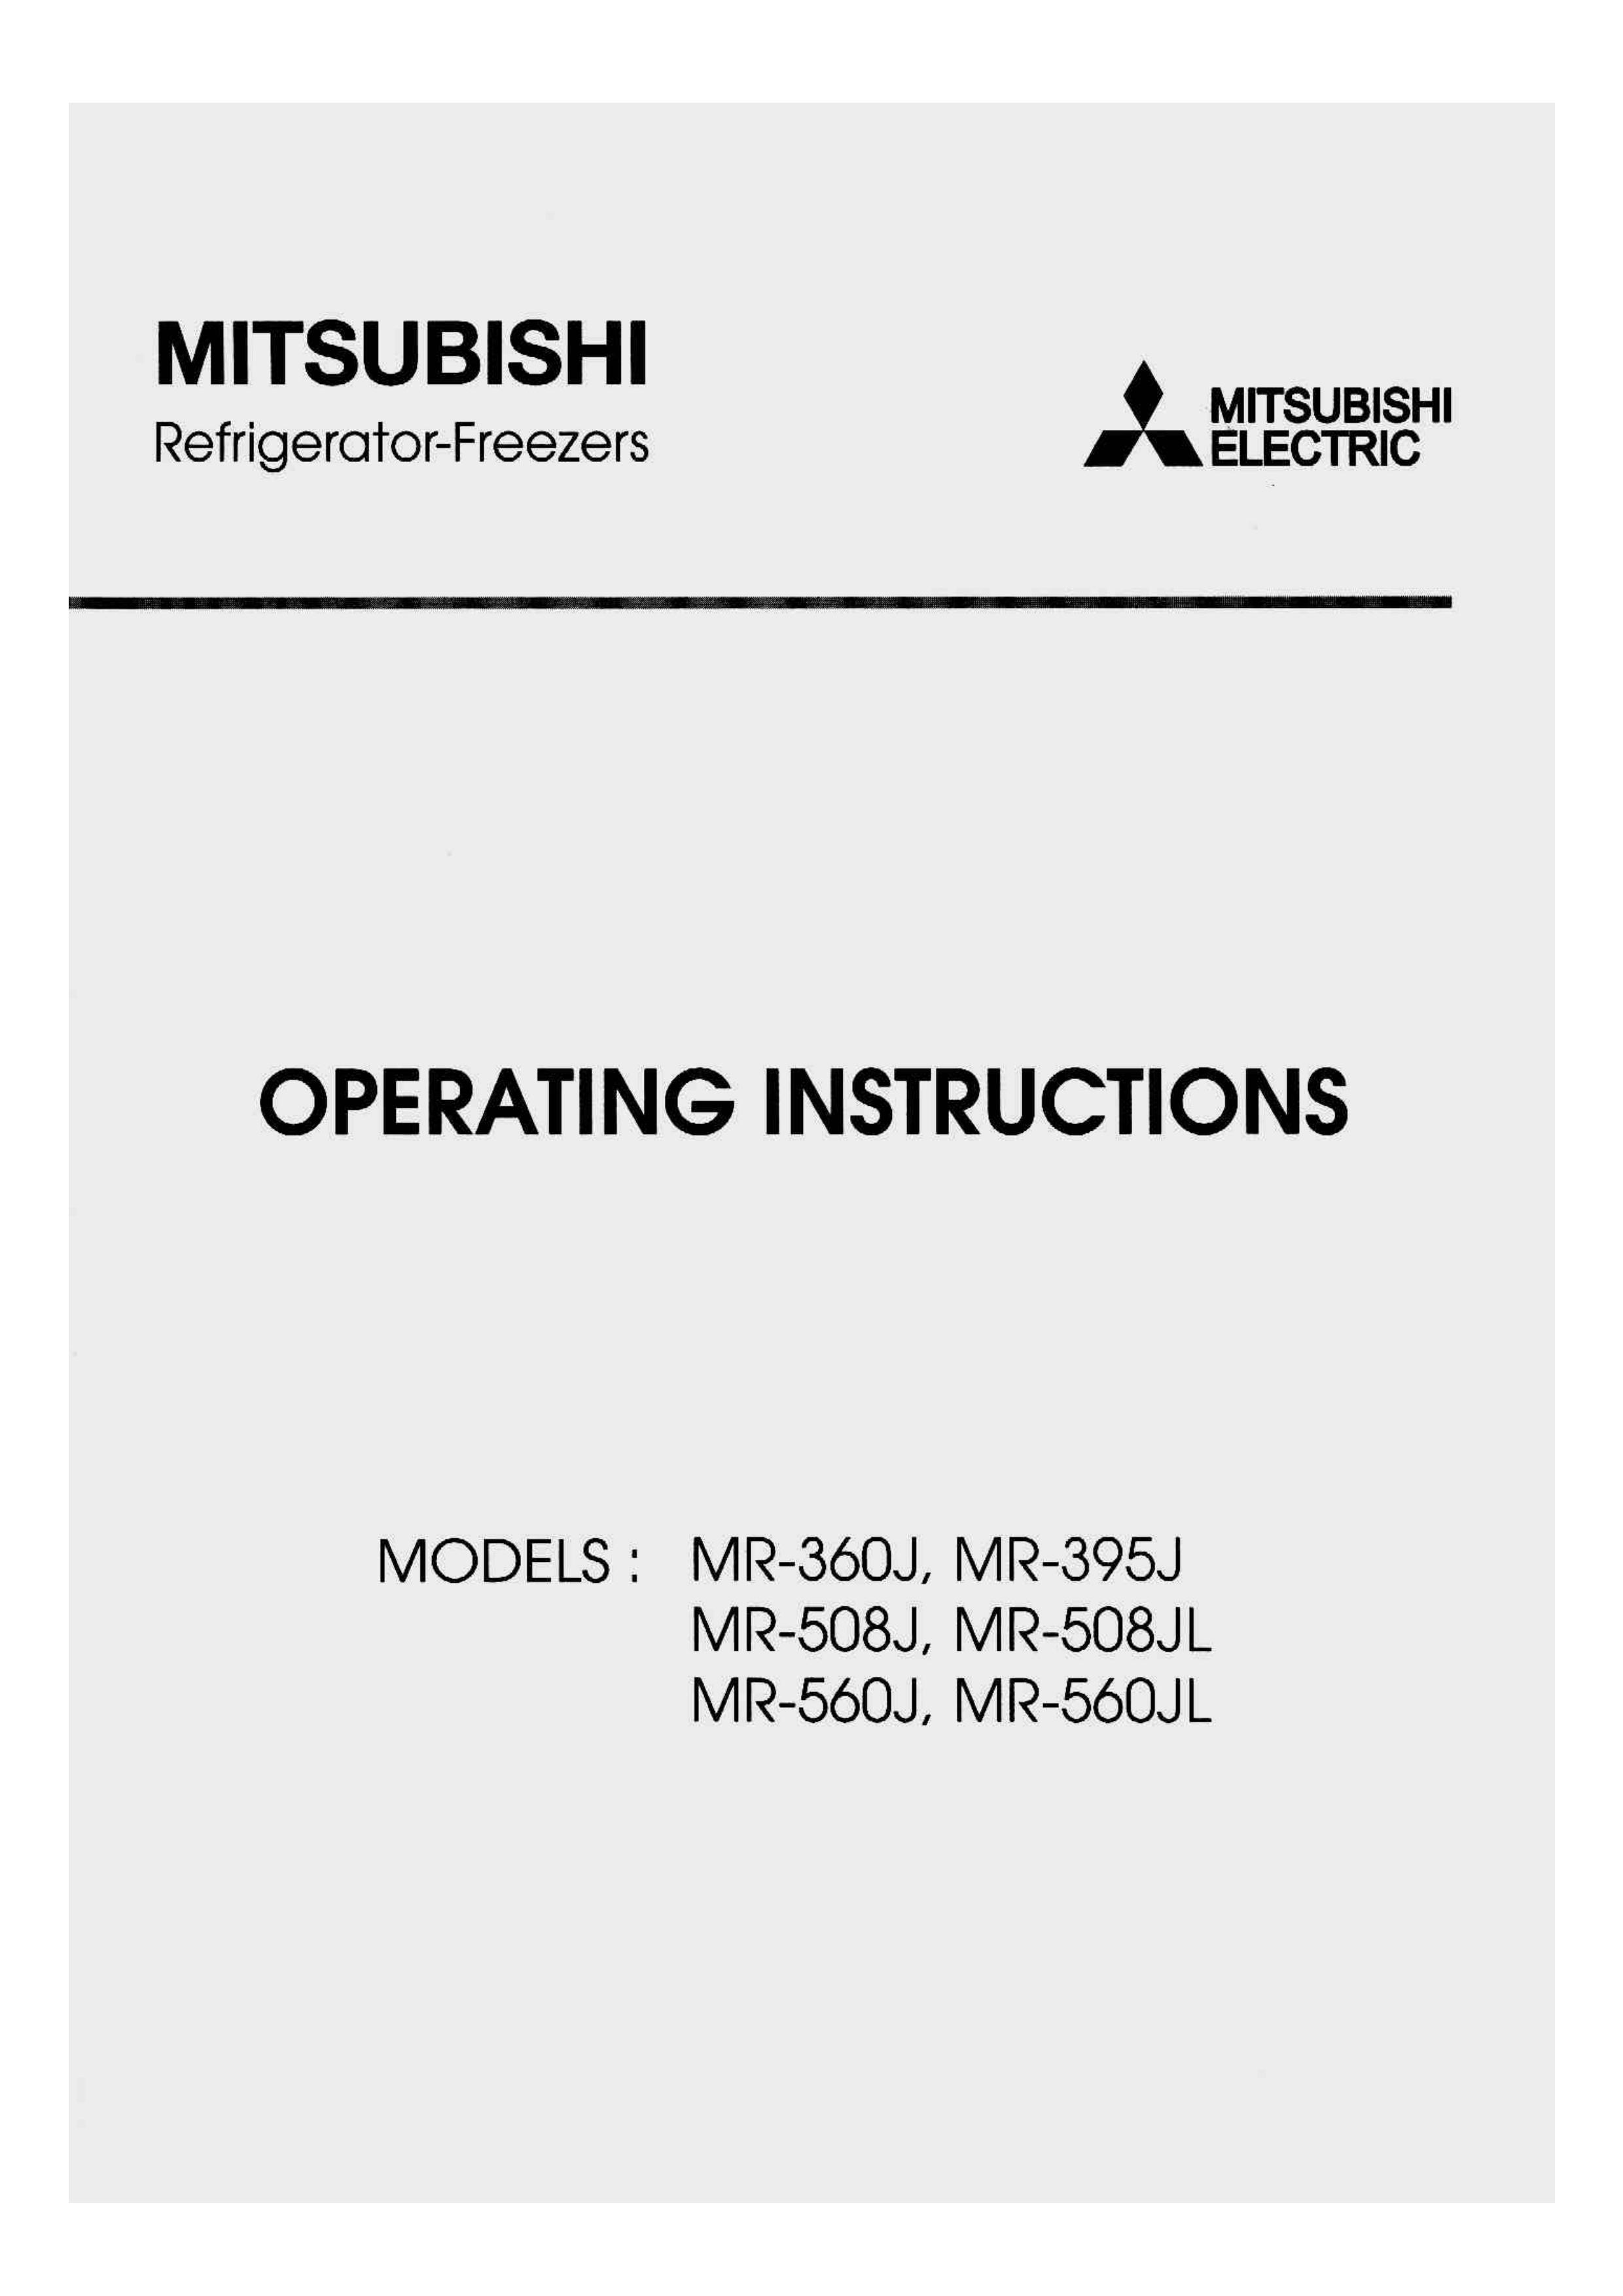 Mitsubishi Electronics MR-508JL Refrigerator User Manual